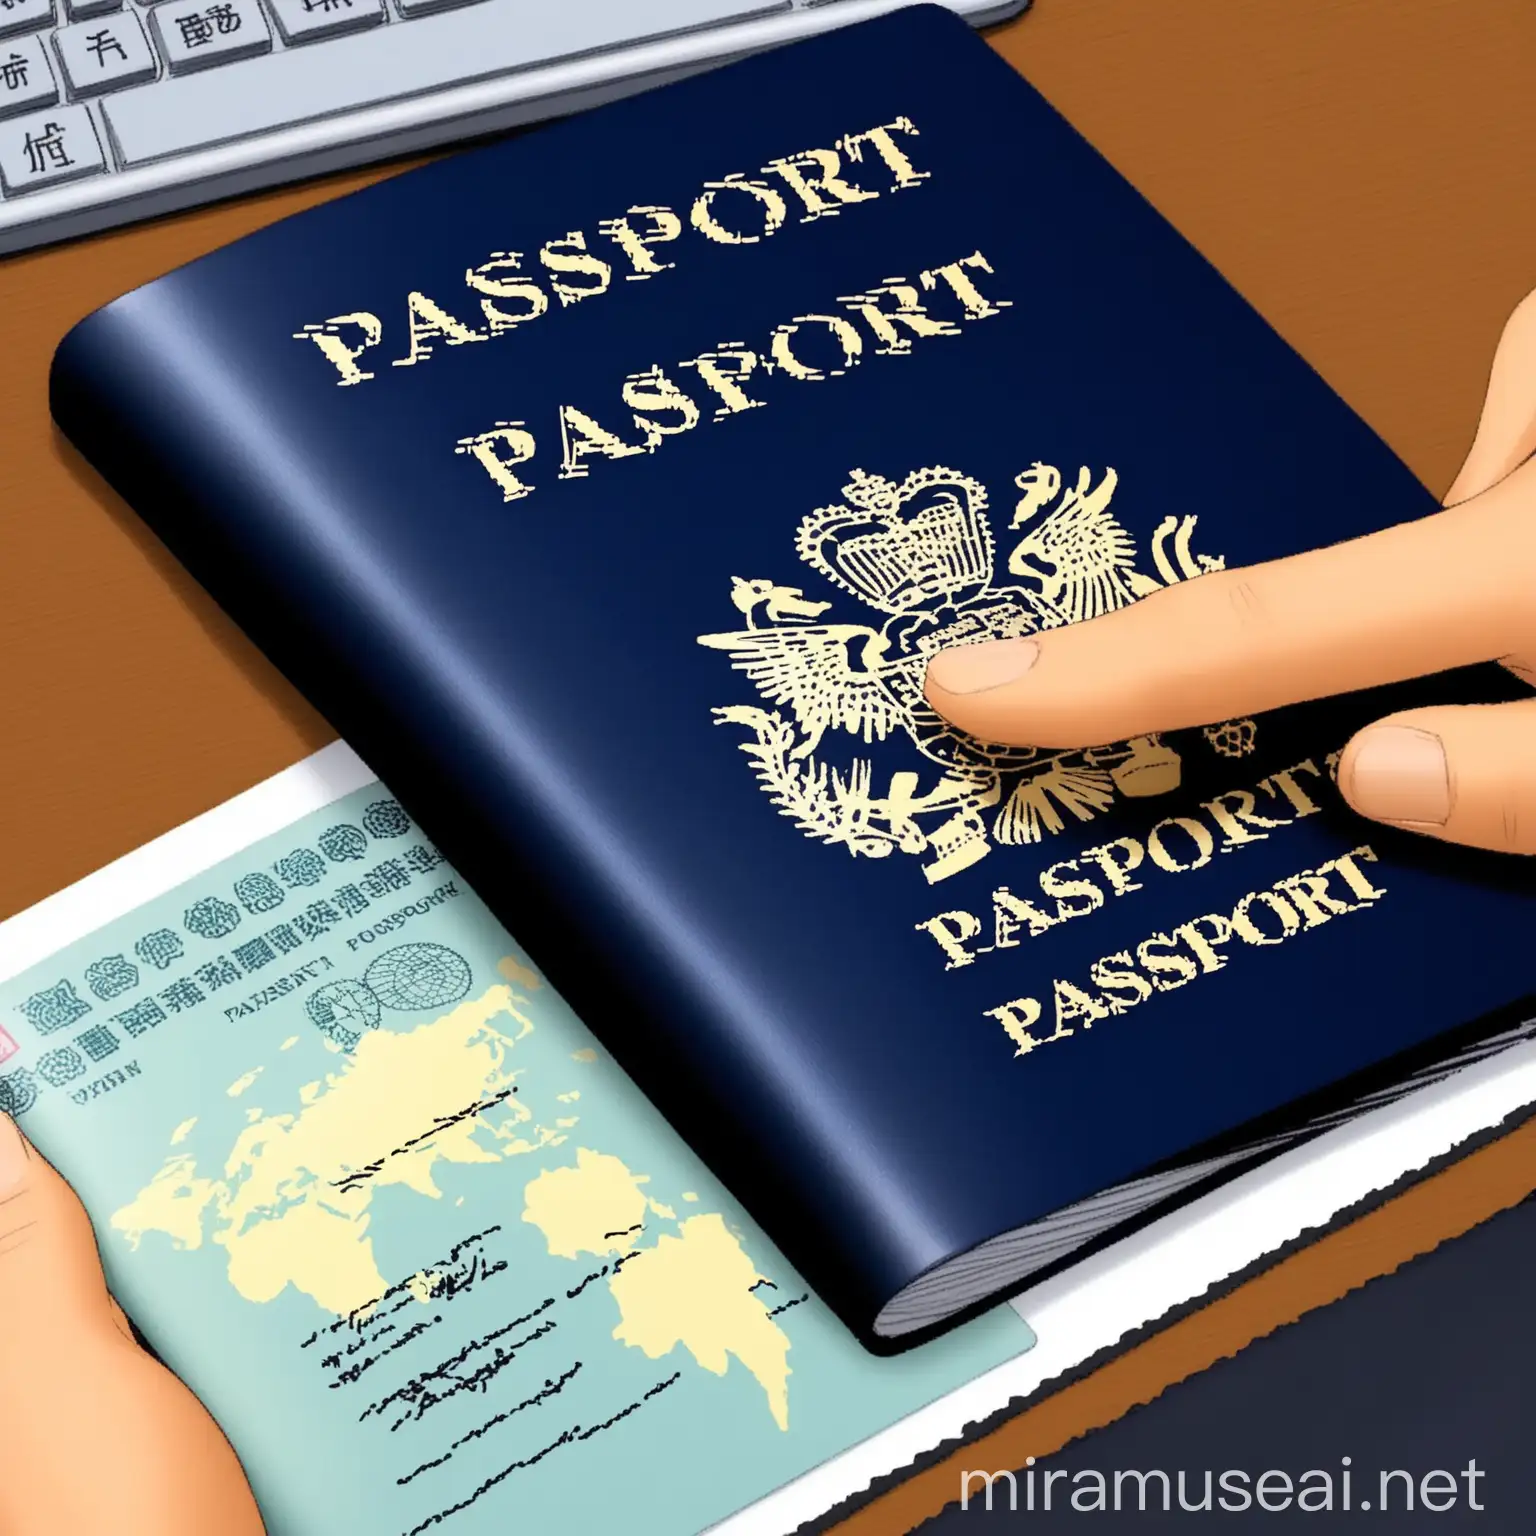 Translator Working on Passport Translation